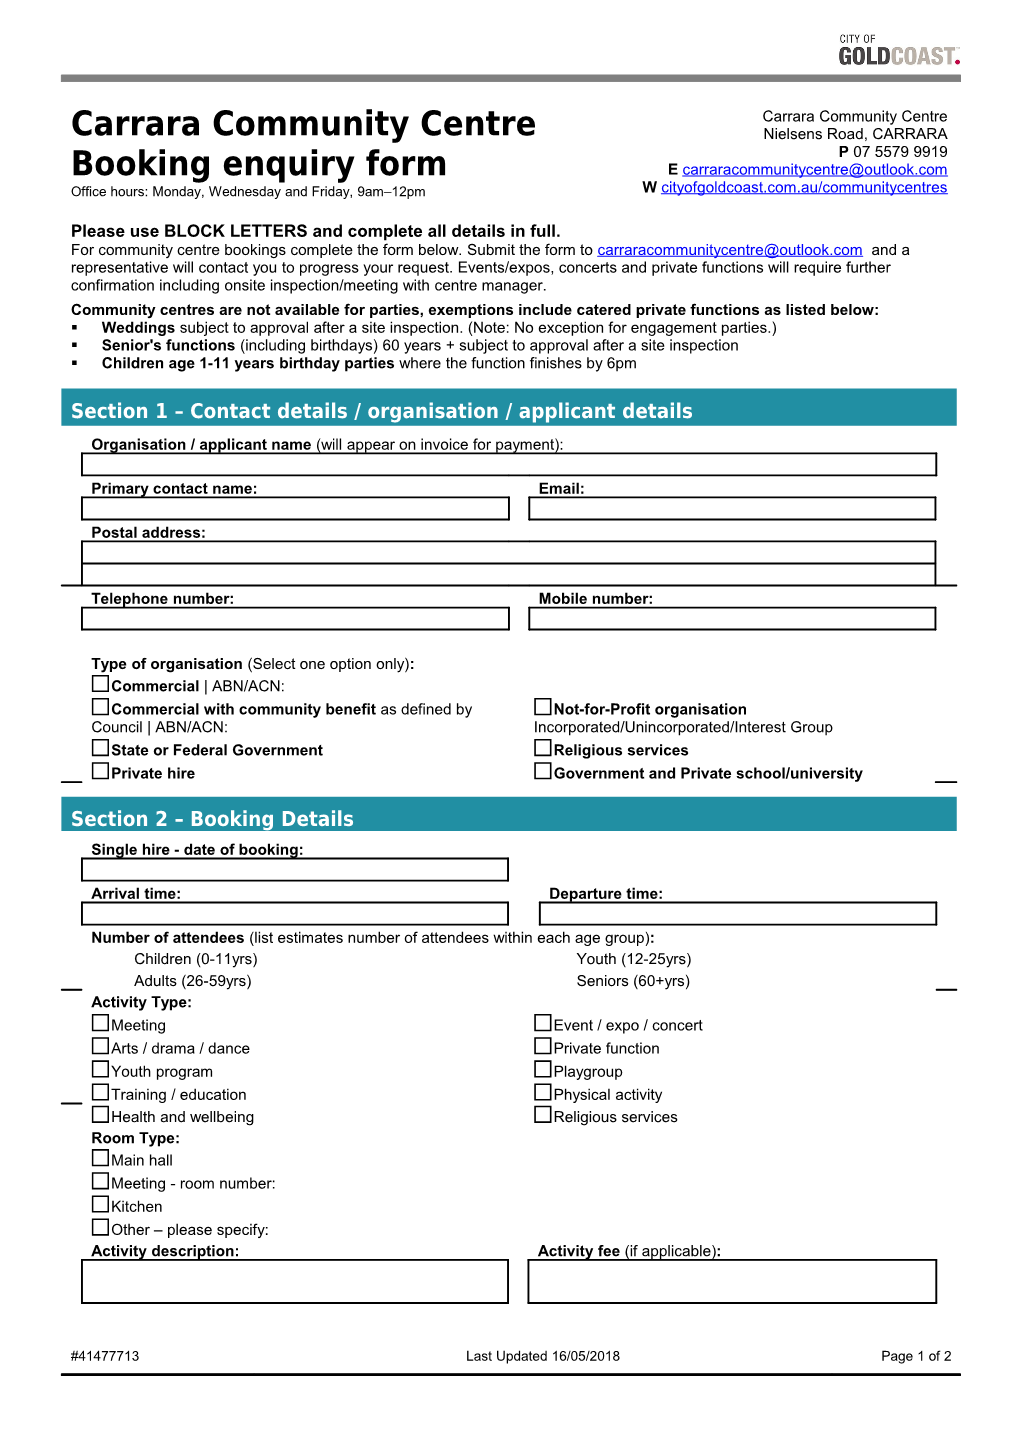 Carrara Community Centre Booking Enquiry Form